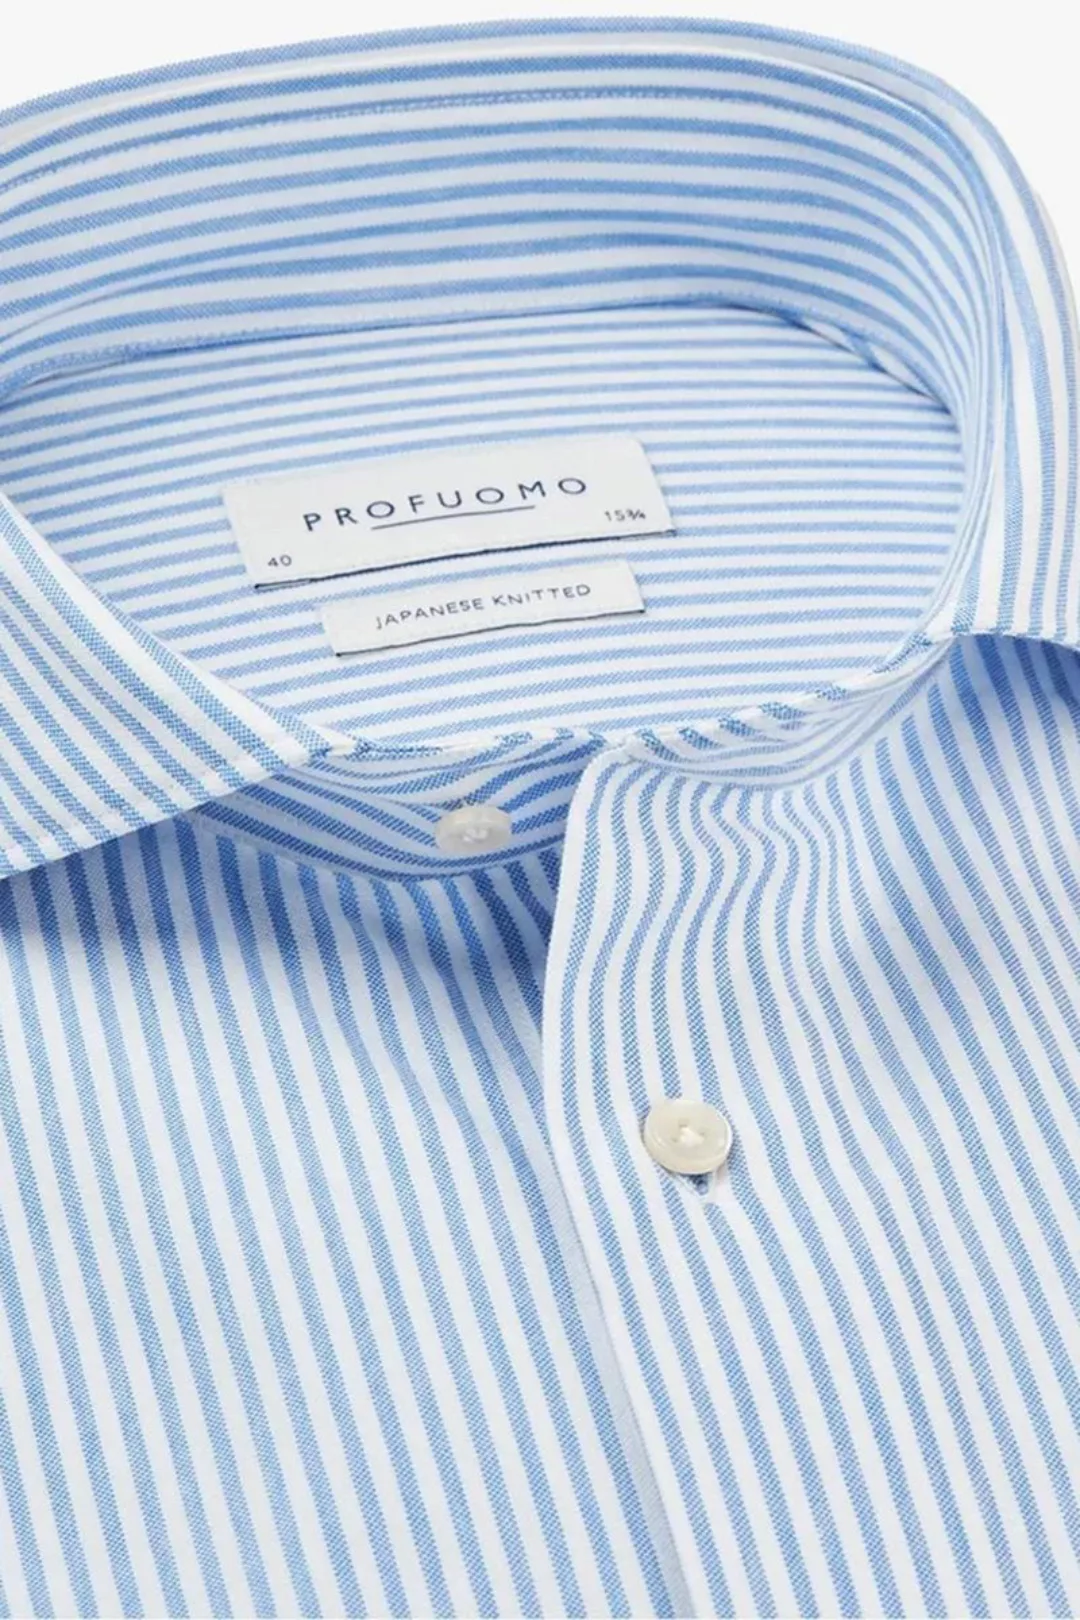 Profuomo Hemd Japanese Knitted Blau Streifen - Größe 43 günstig online kaufen